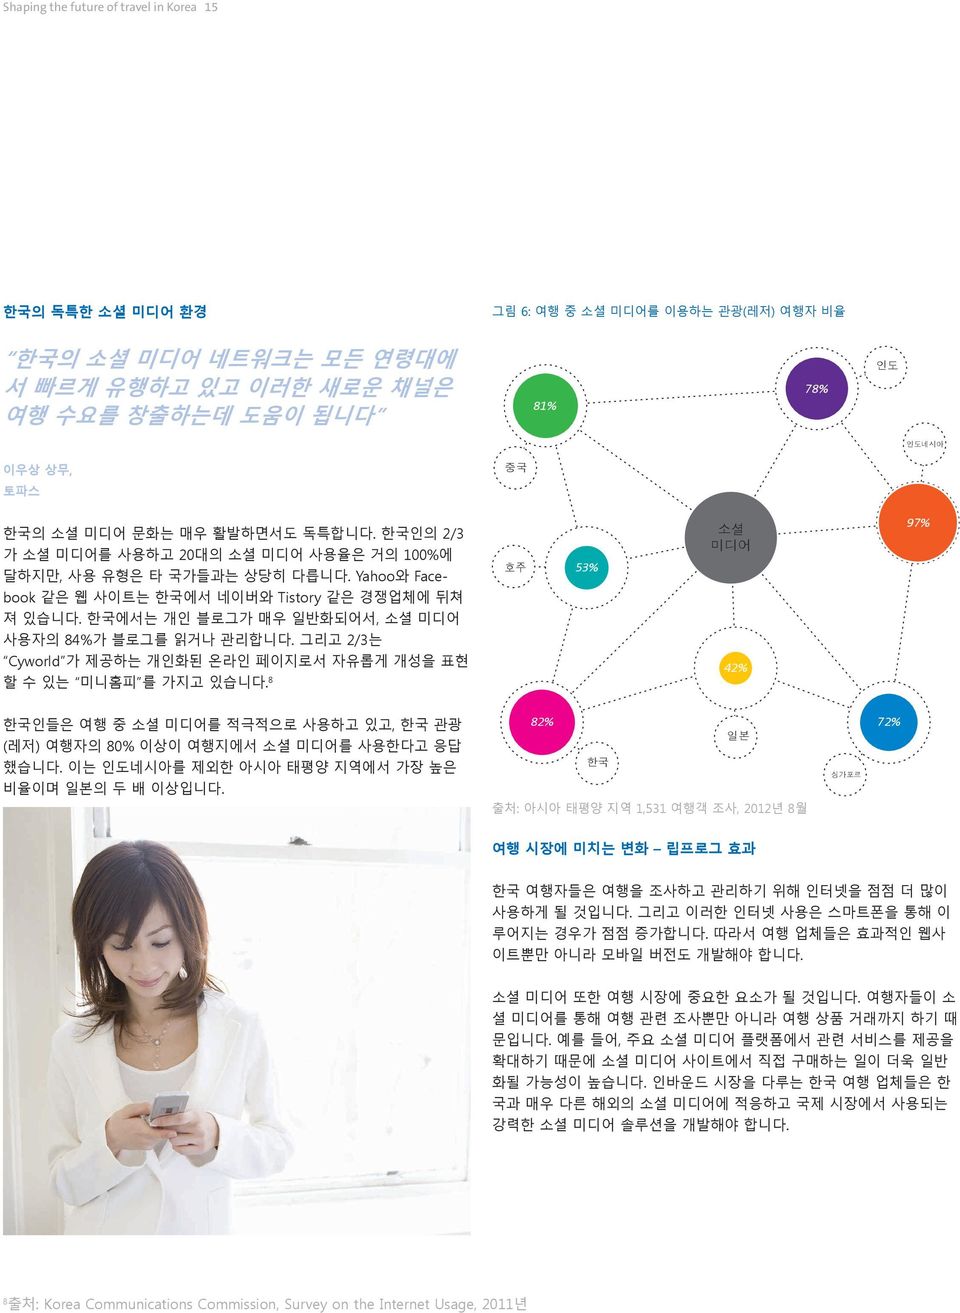 한국에서는 개인 블로그가 매우 일반화되어서, 소셜 미디어 사용자의 84%가 블로그를 읽거나 관리합니다. 그리고 2/3는 Cyworld 가 제공하는 개인화된 온라인 페이지로서 자유롭게 개성을 표현 할 수 있는 미니홈피 를 가지고 있습니다.